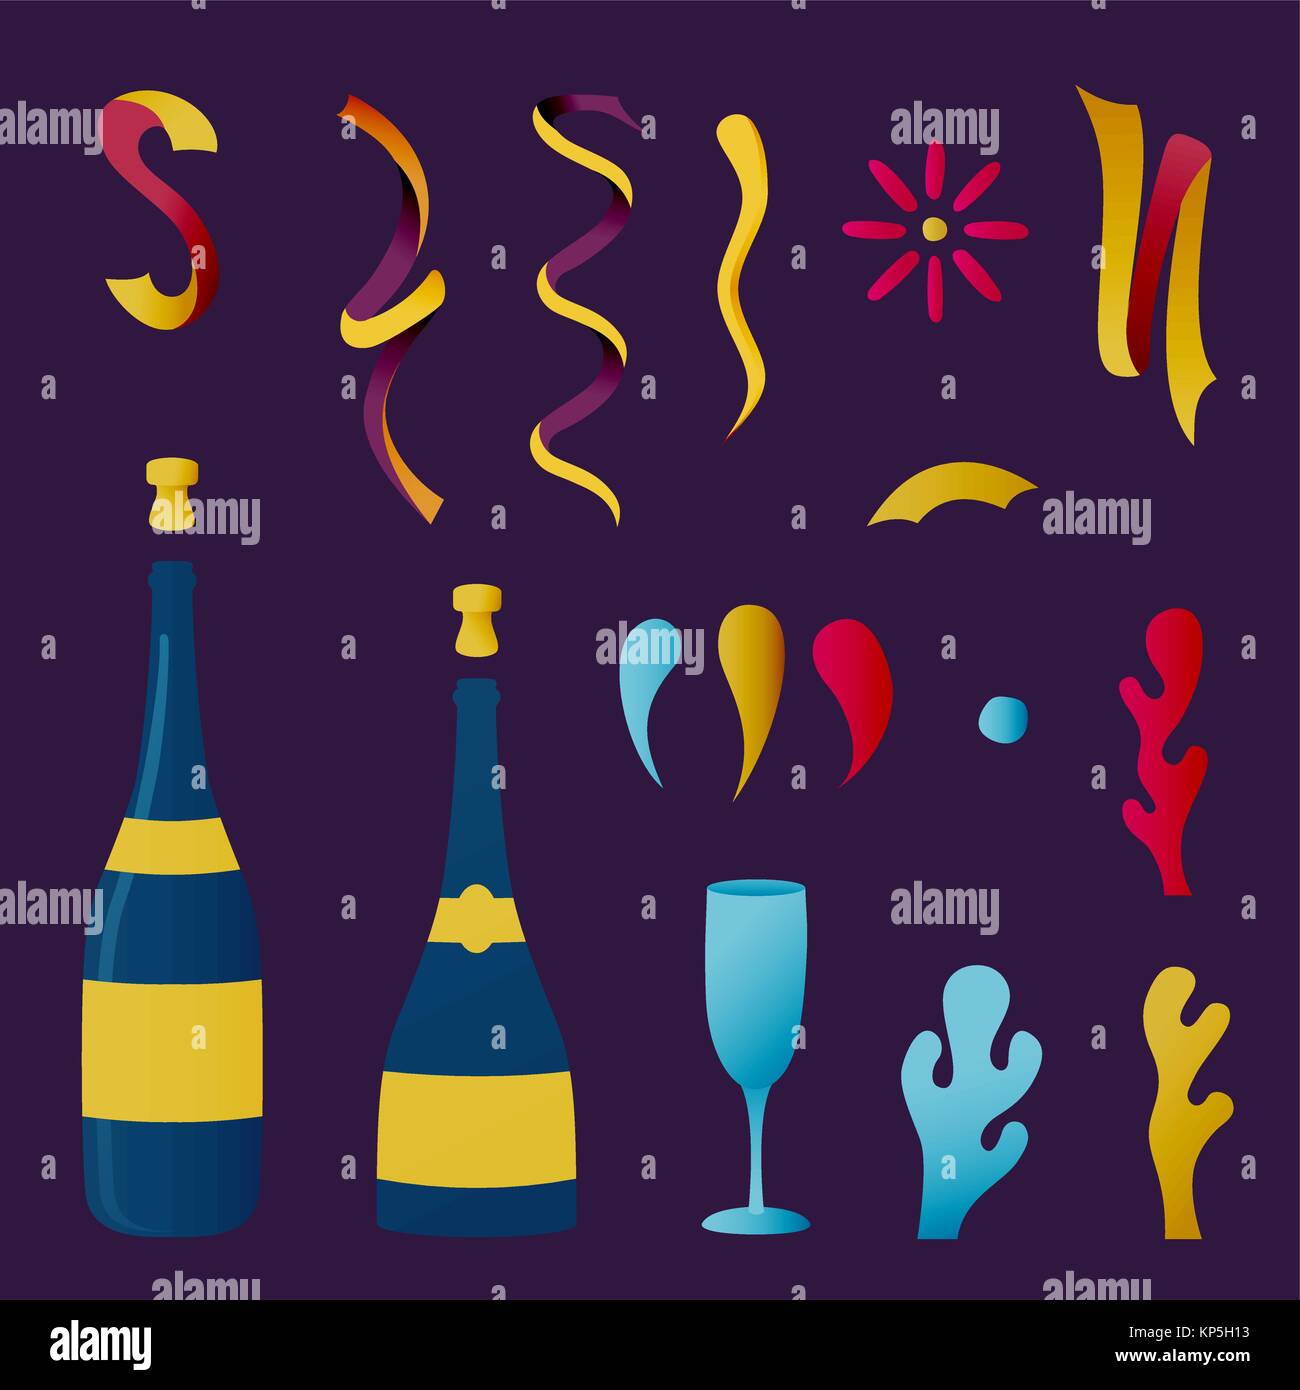 Flasche Champagner Feier, Party trinken Elemente für besondere Veranstaltungen oder Urlaub. Mit Konfetti, Trinkglas, und Dekoration. EPS 10 Vektor. Stock Vektor